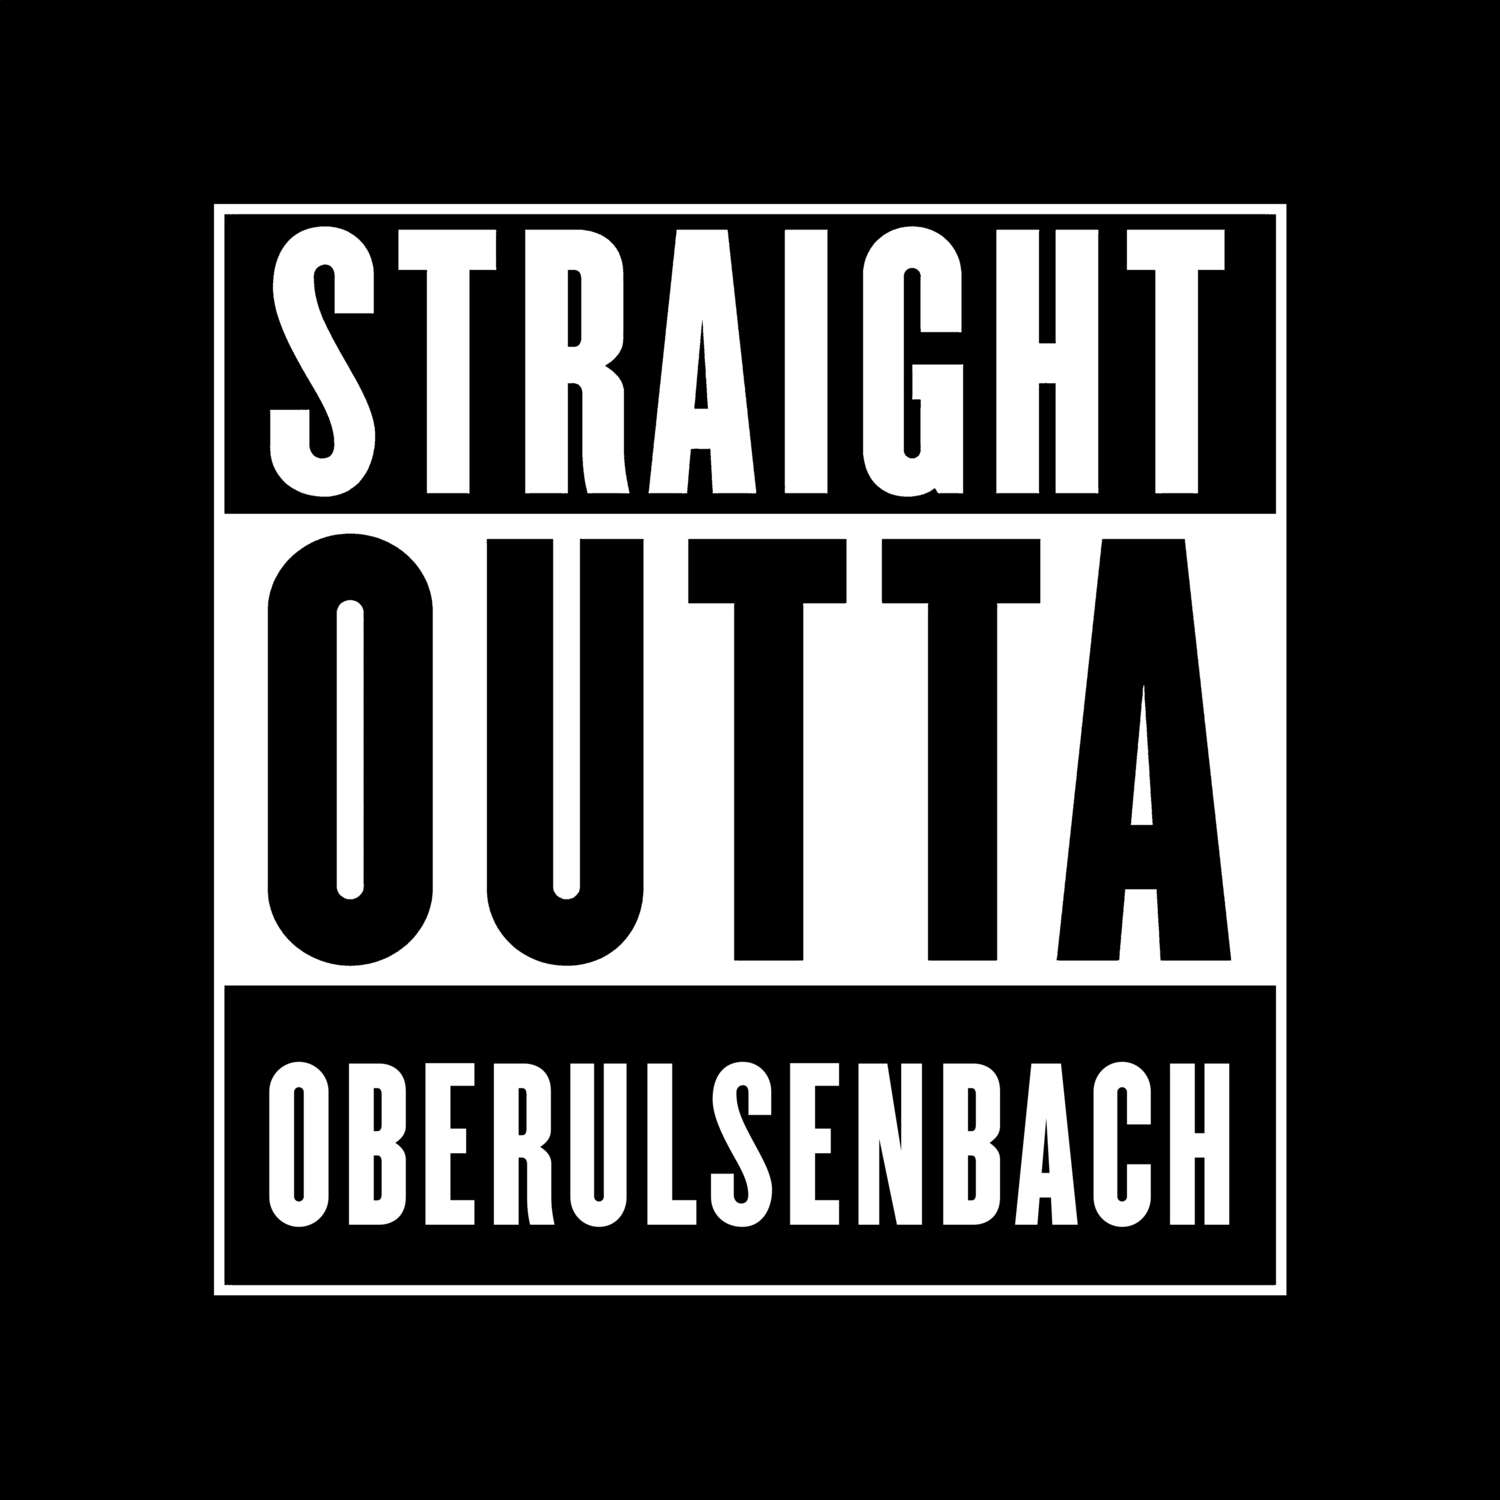 Oberulsenbach T-Shirt »Straight Outta«